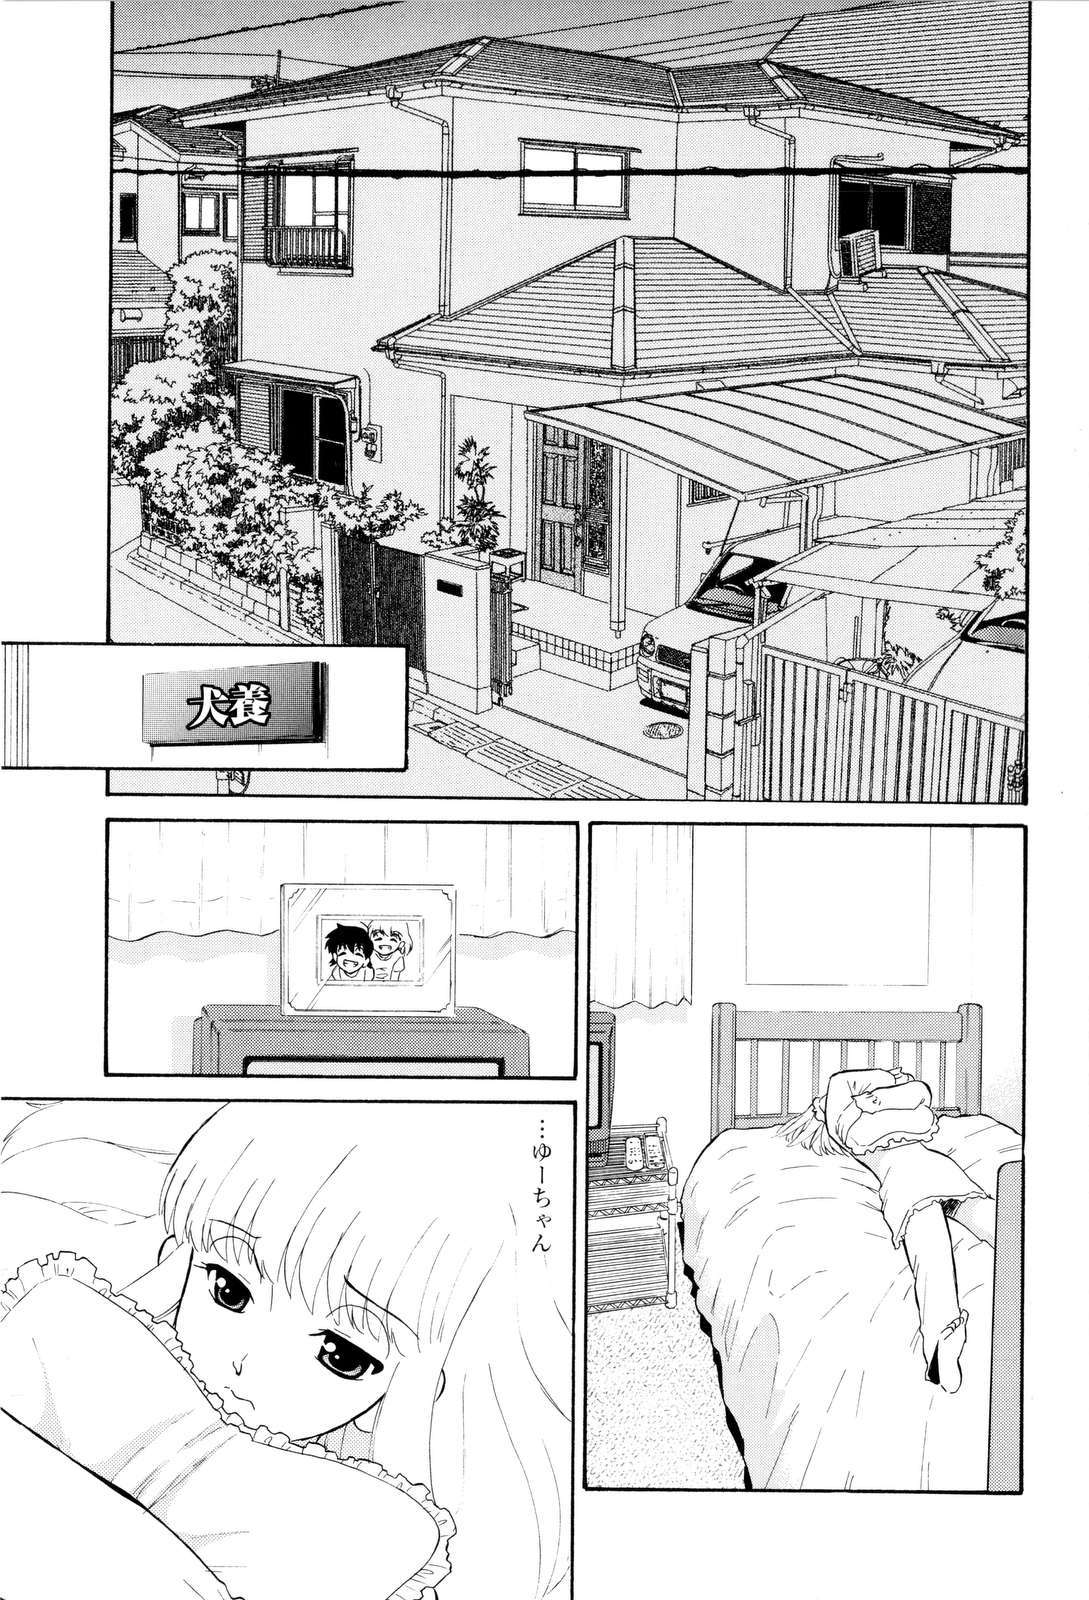 [Dozamura] Haruka 69 Vol.2 page 8 full